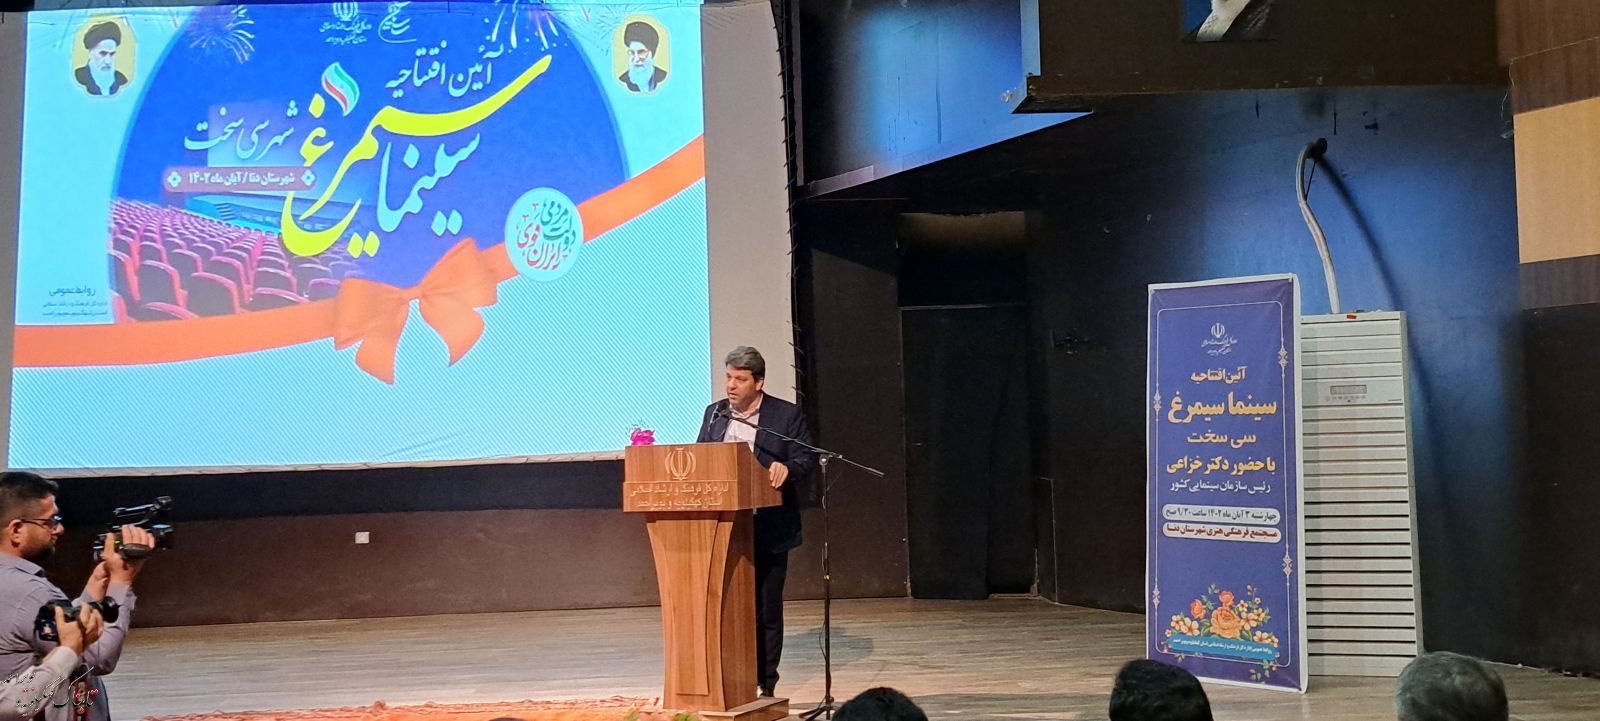 افتتاح  سینما سیمرغ سیسخت با حضور مسولین کشوری و استانی